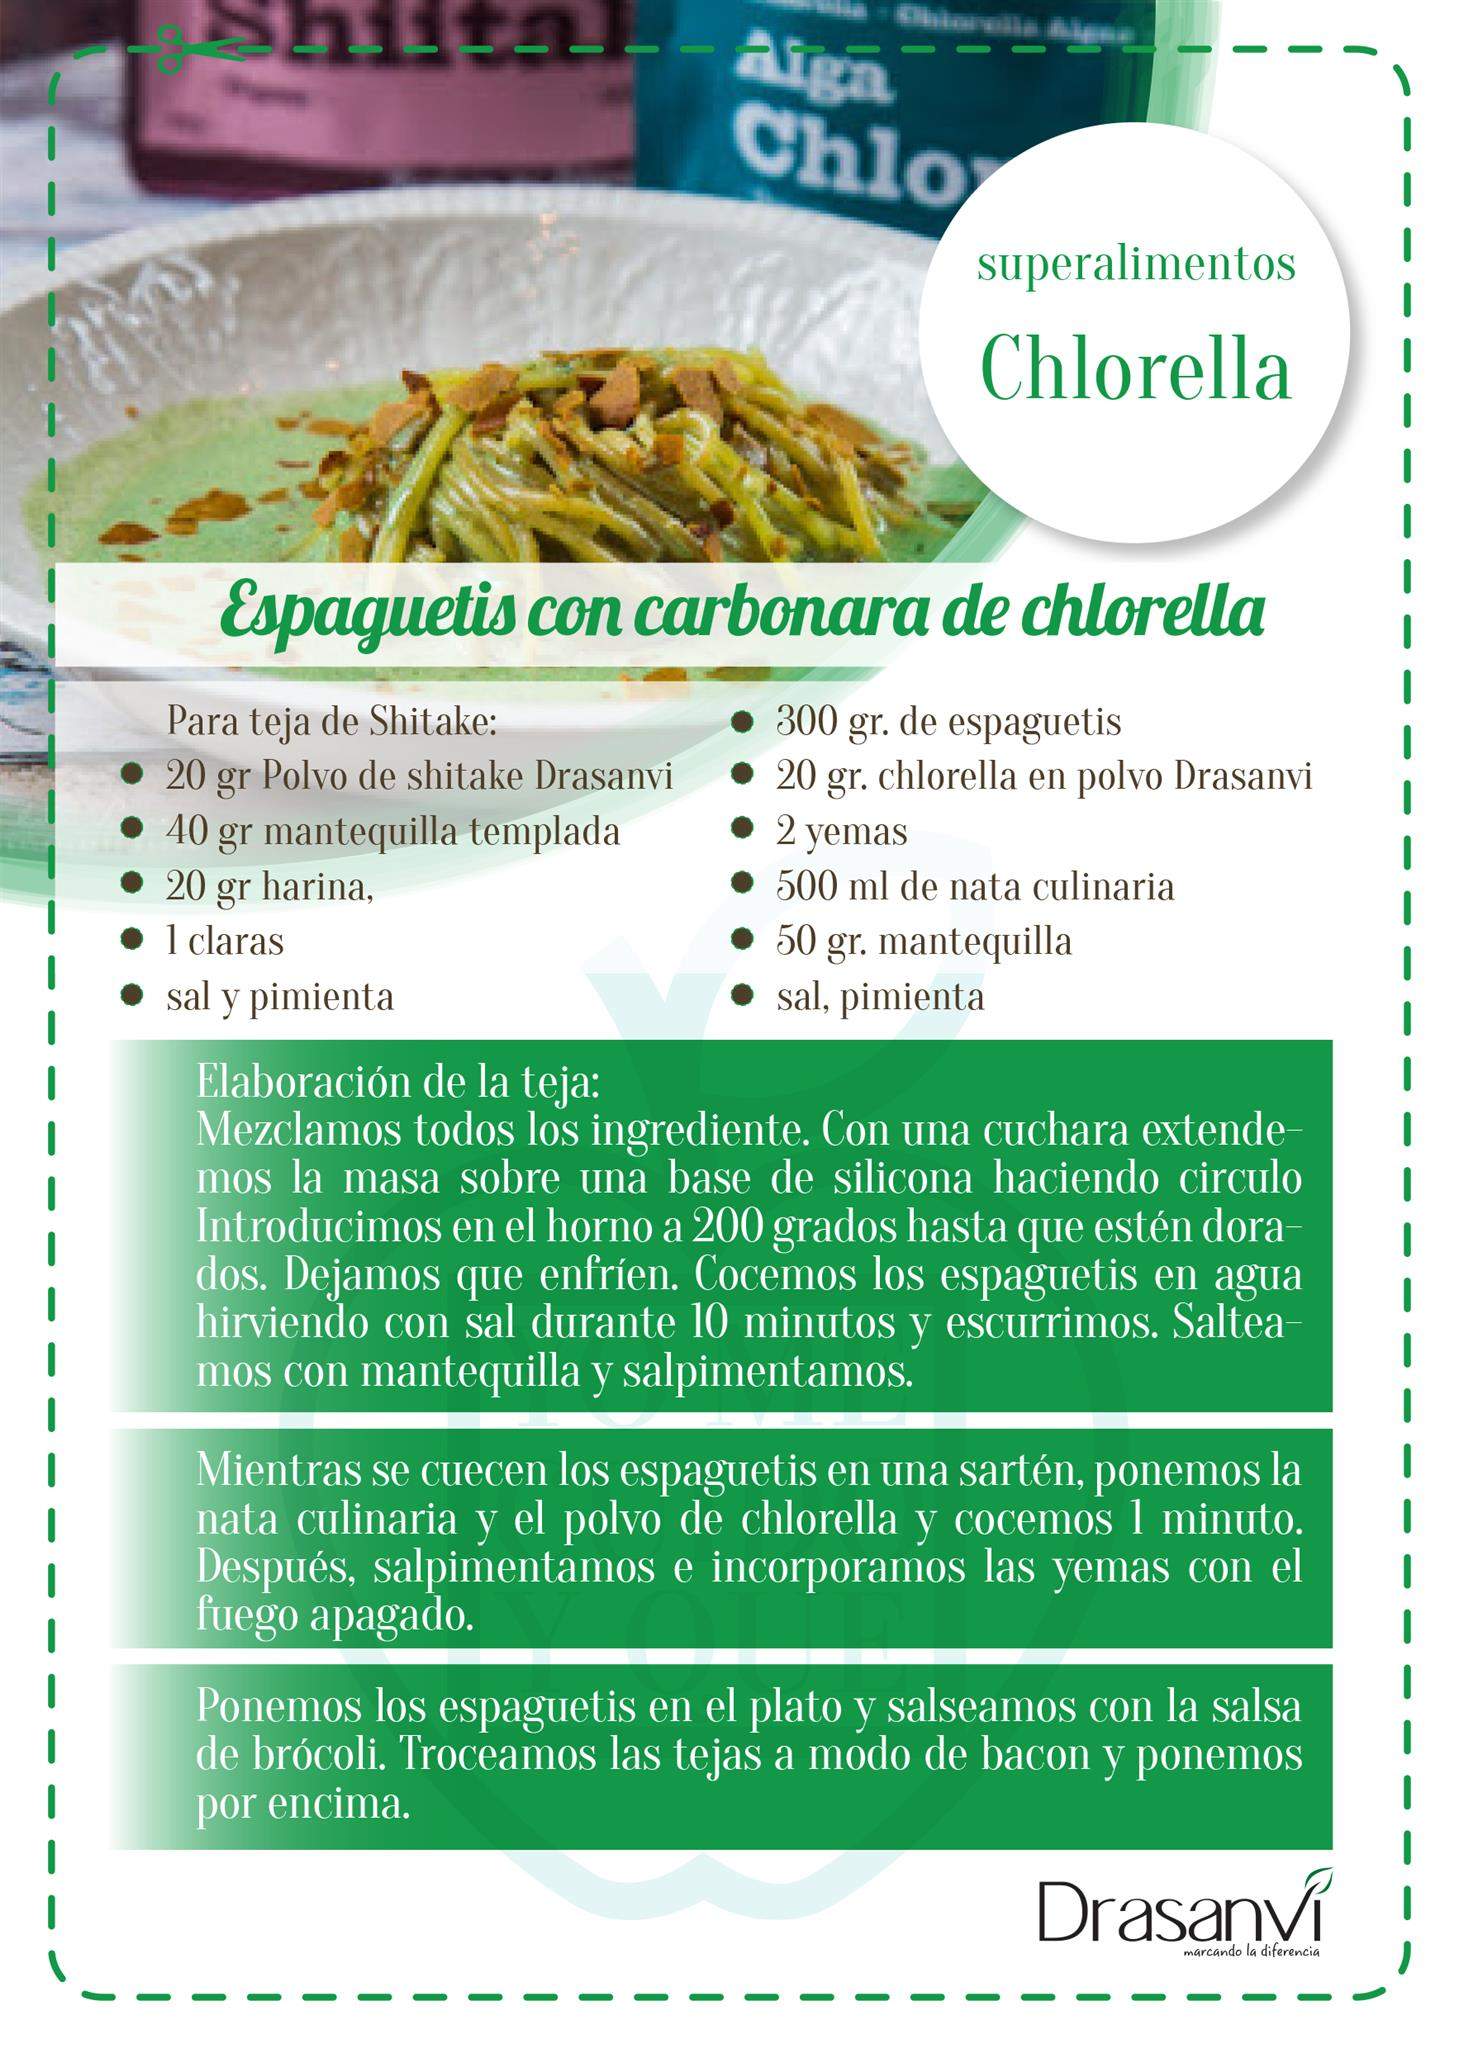 Espaguetis con carbonara chlorella